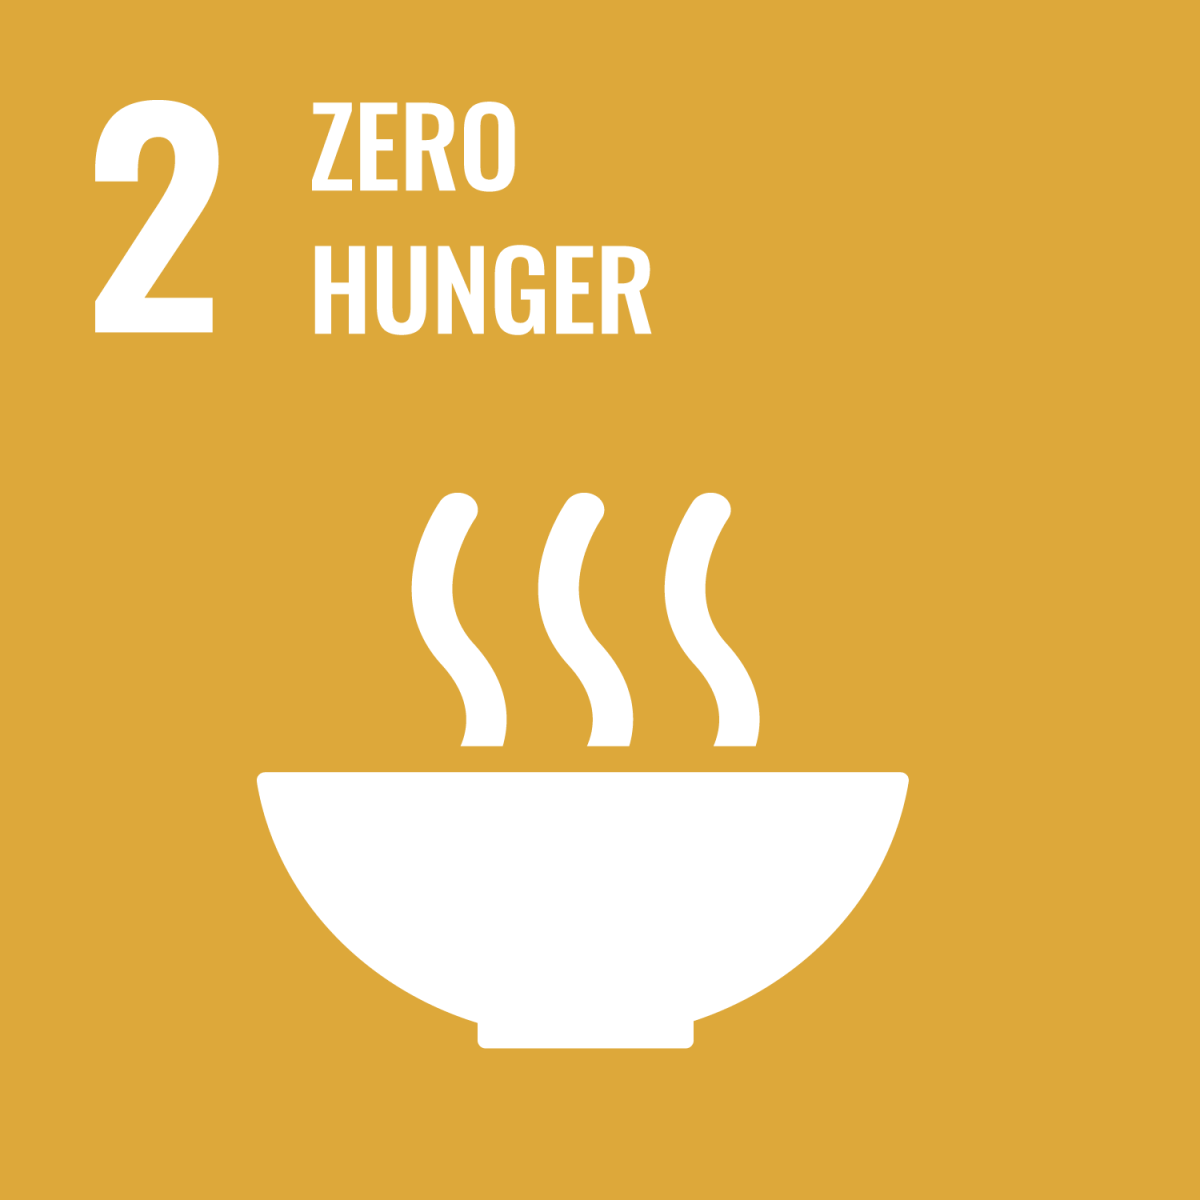 Goal 2: Zero hunger (No hunger)